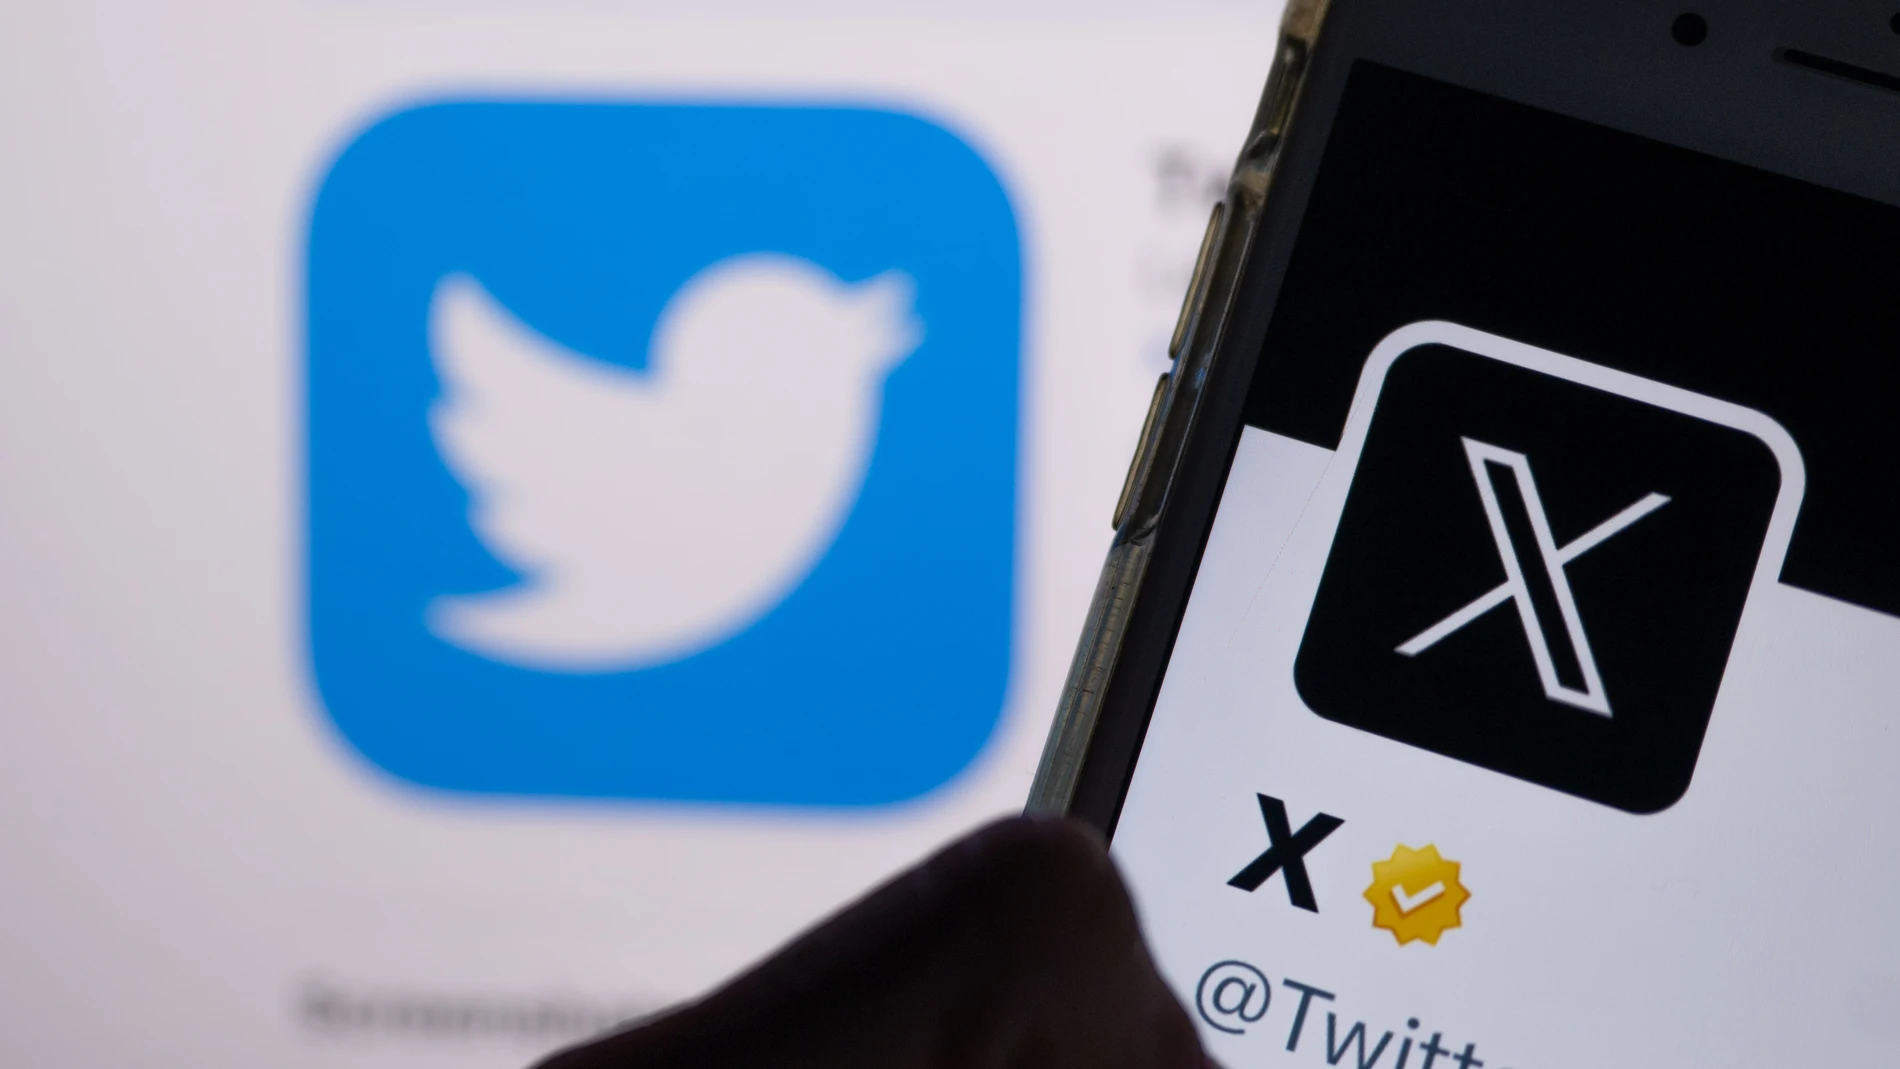 X (Twitter) trabaja en un 'marketplace' para la compraventa de nombres de usuario inactivos, según Forbes